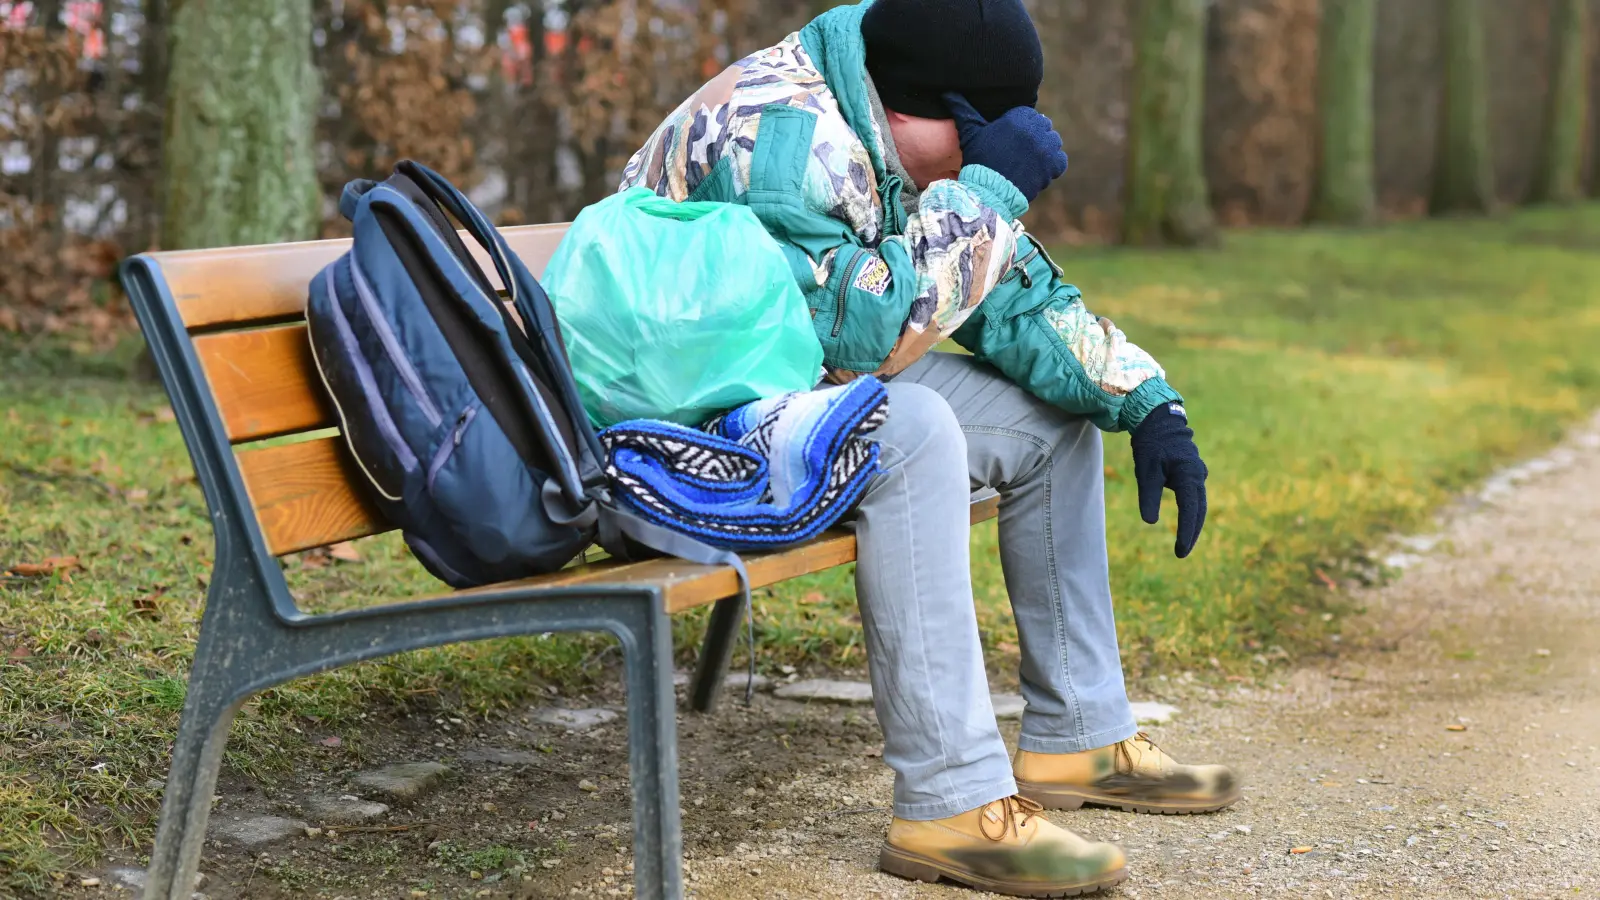 Oft sind es mehrere Gründe, die dazu führen, dass Menschen in die Obdachlosigkeit rutschen. Die Entwicklungen der vergangenen Monate haben laut den Angaben der Stadt aber nicht dazu geführt, dass die Zahlen sprunghaft gestiegen sind. (Archivfoto: Jim Albright)